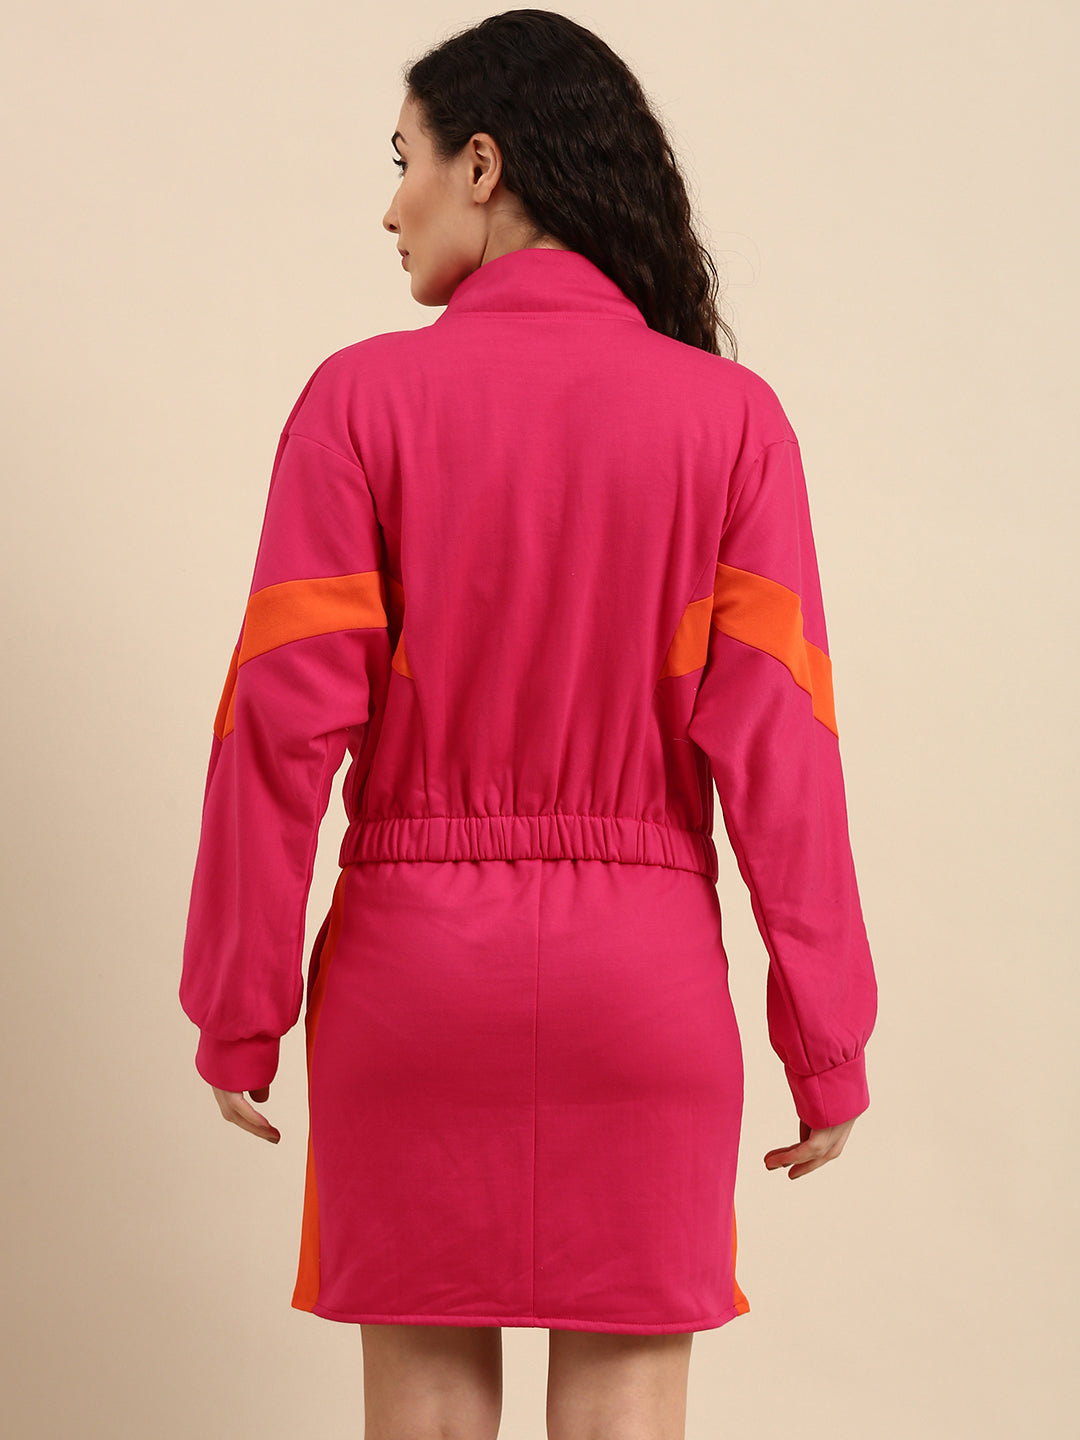 Athena Women Fuchsia & Orange Colourblocked Top with Skirt - Athena Lifestyle